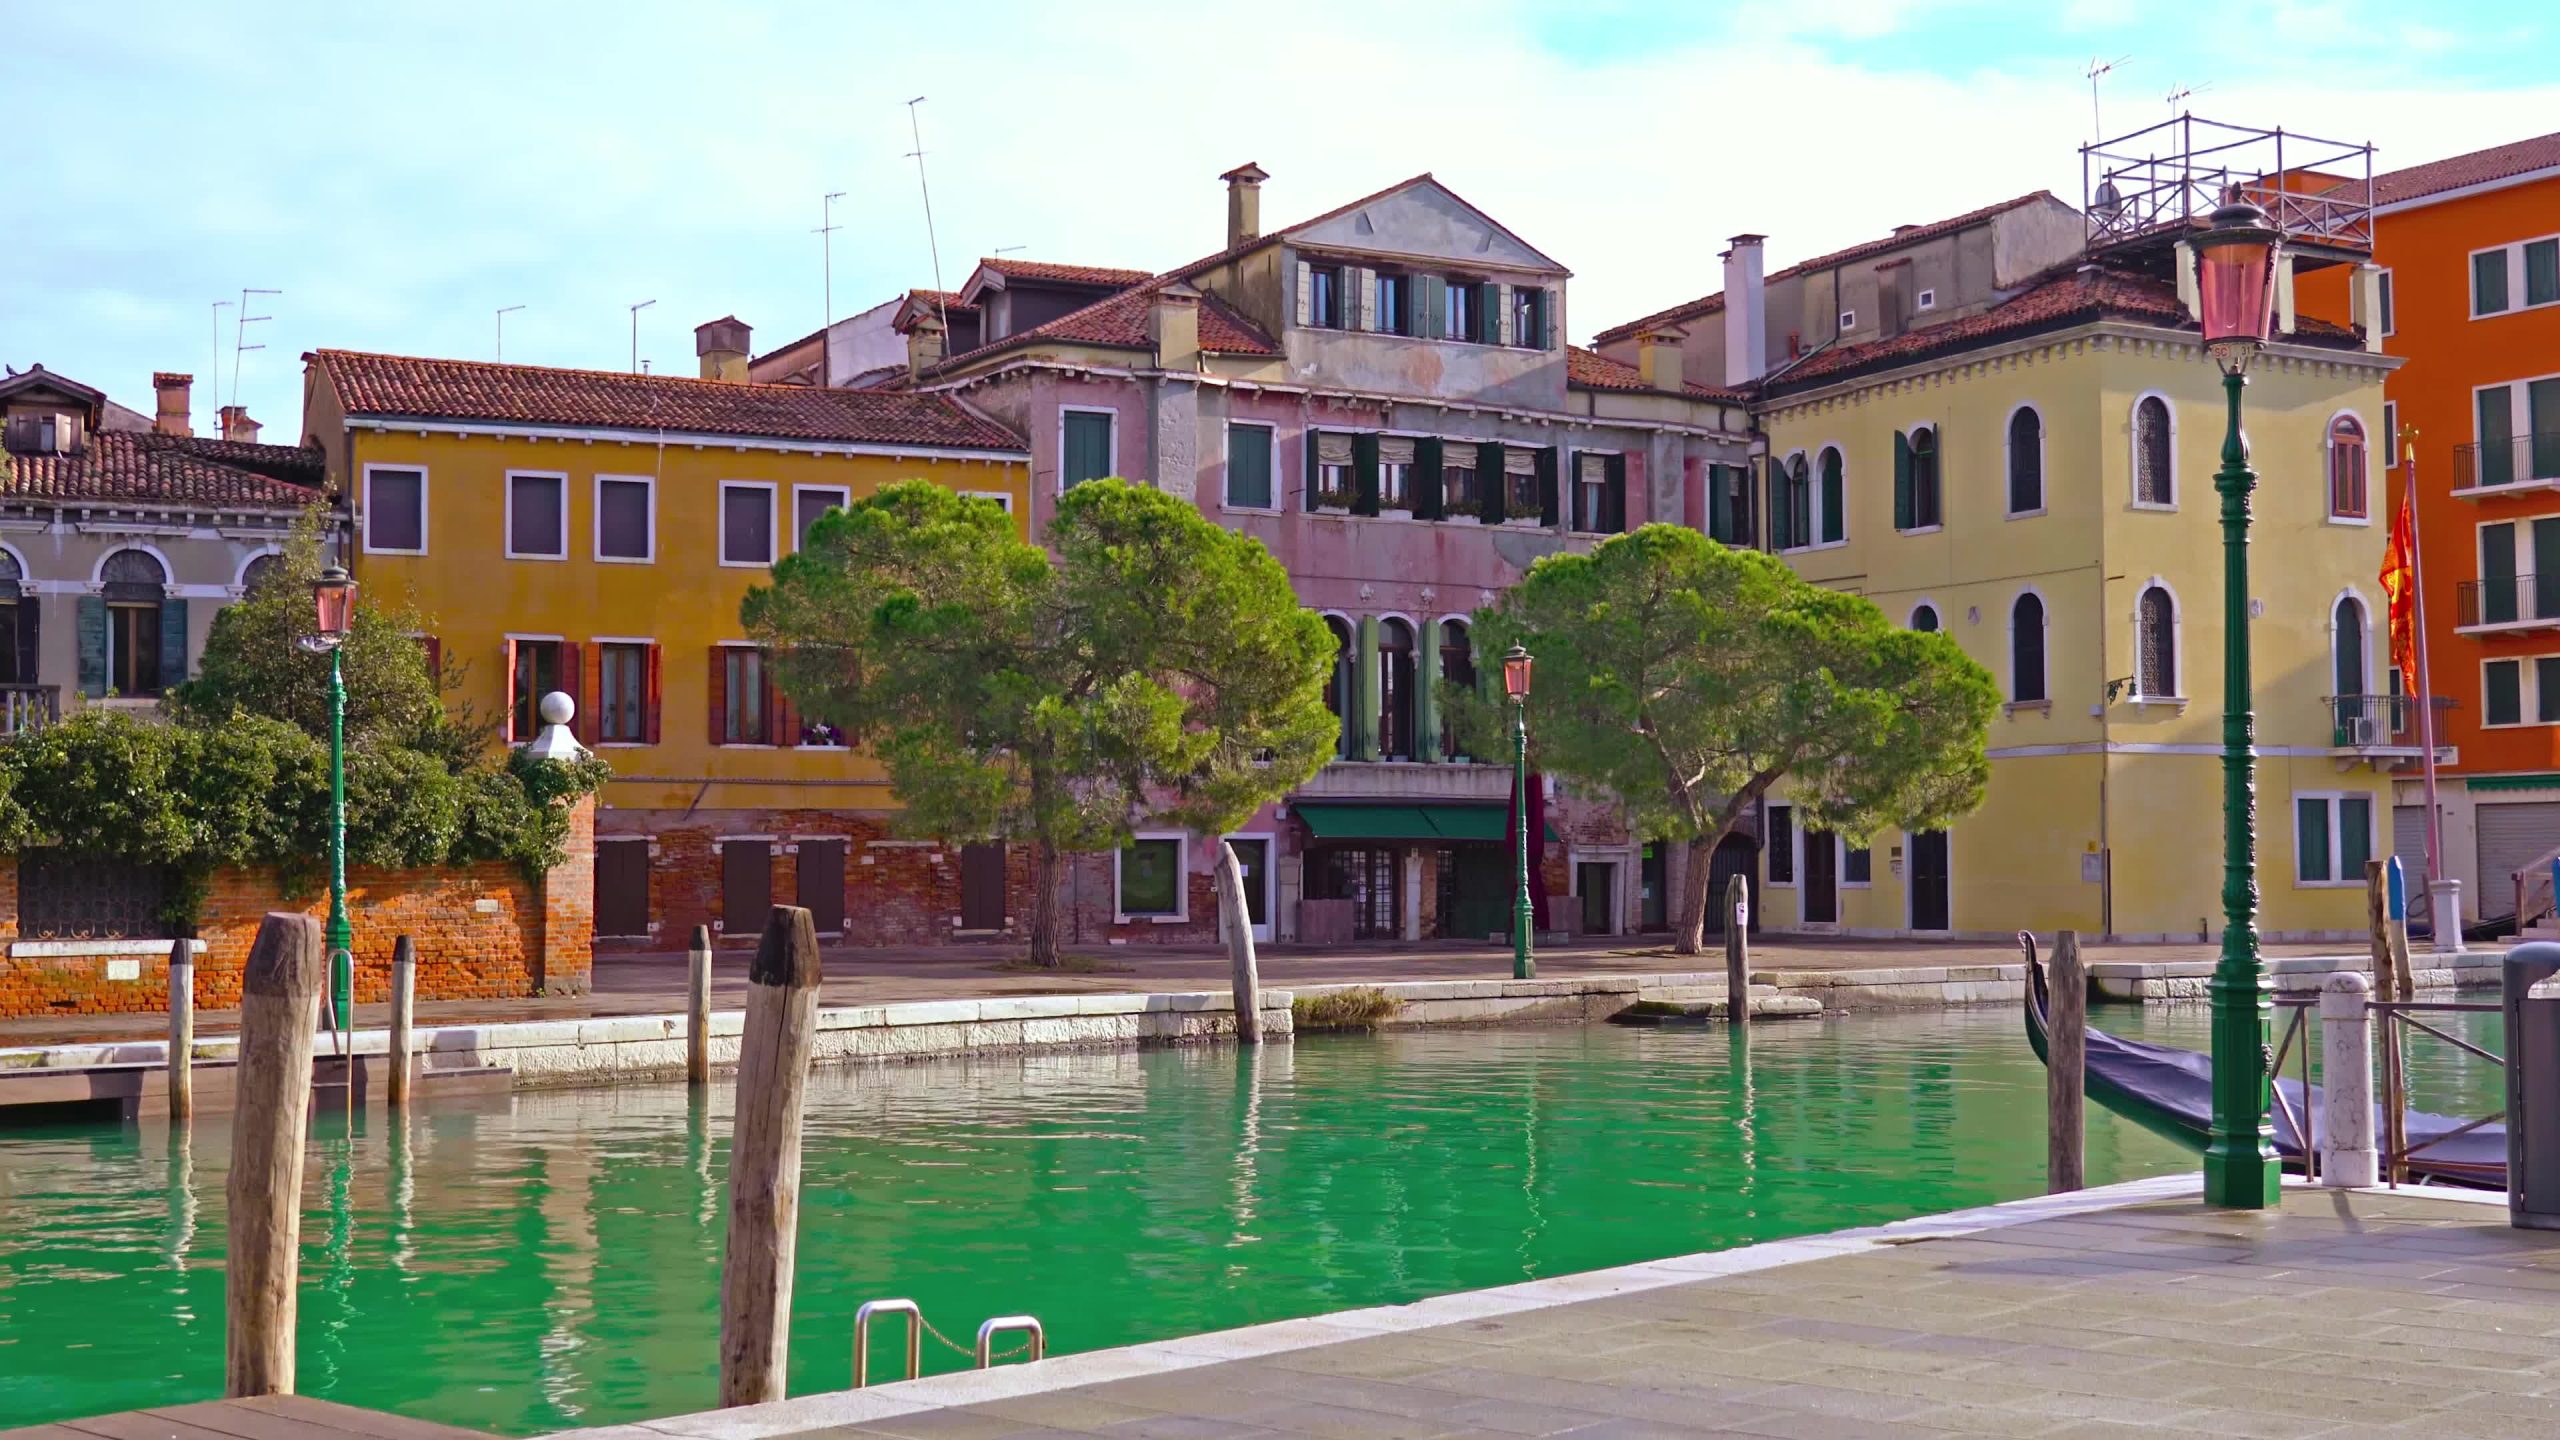 Case di Venezia con alberi verdi e canale con acqua